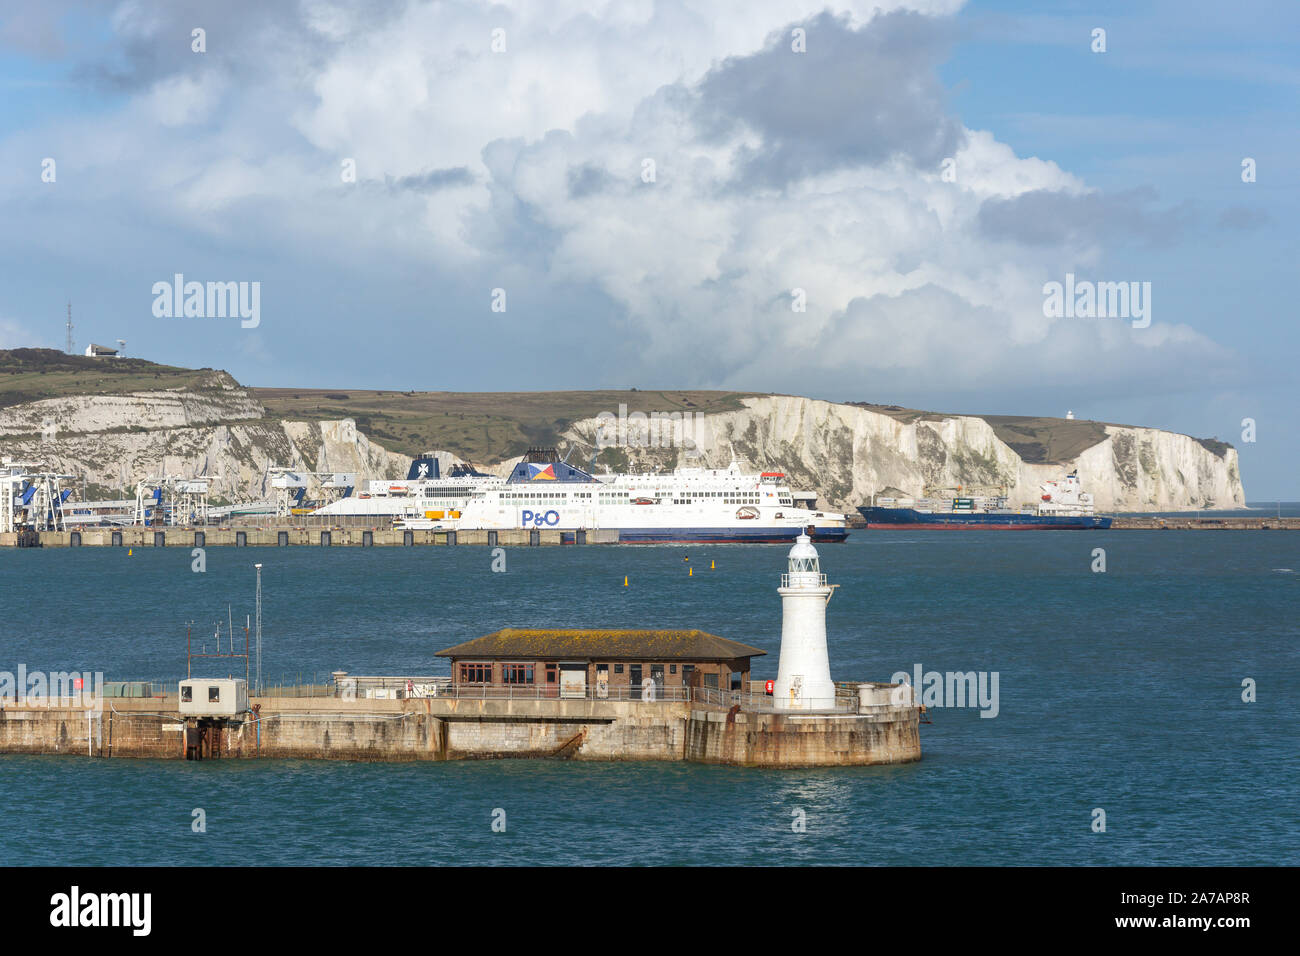 Les falaises blanches de Douvres et P&O Ferries Bateau de Port intérieur, Dover, Kent, Angleterre, Royaume-Uni Banque D'Images